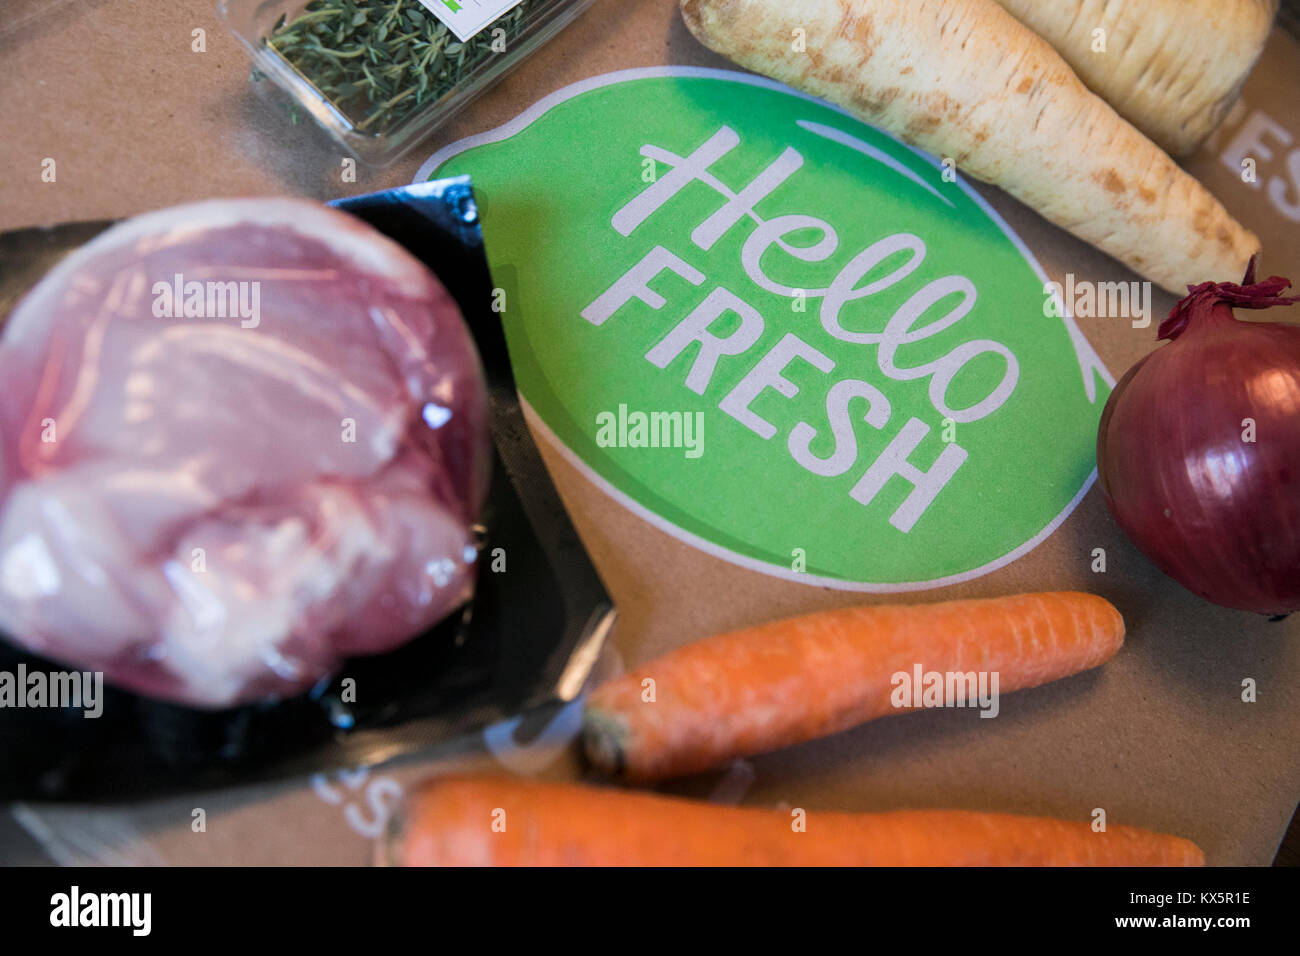 Il contenuto di un pasto HelloFresh kit di consegna come si vede il 3 gennaio 2018. Foto Stock